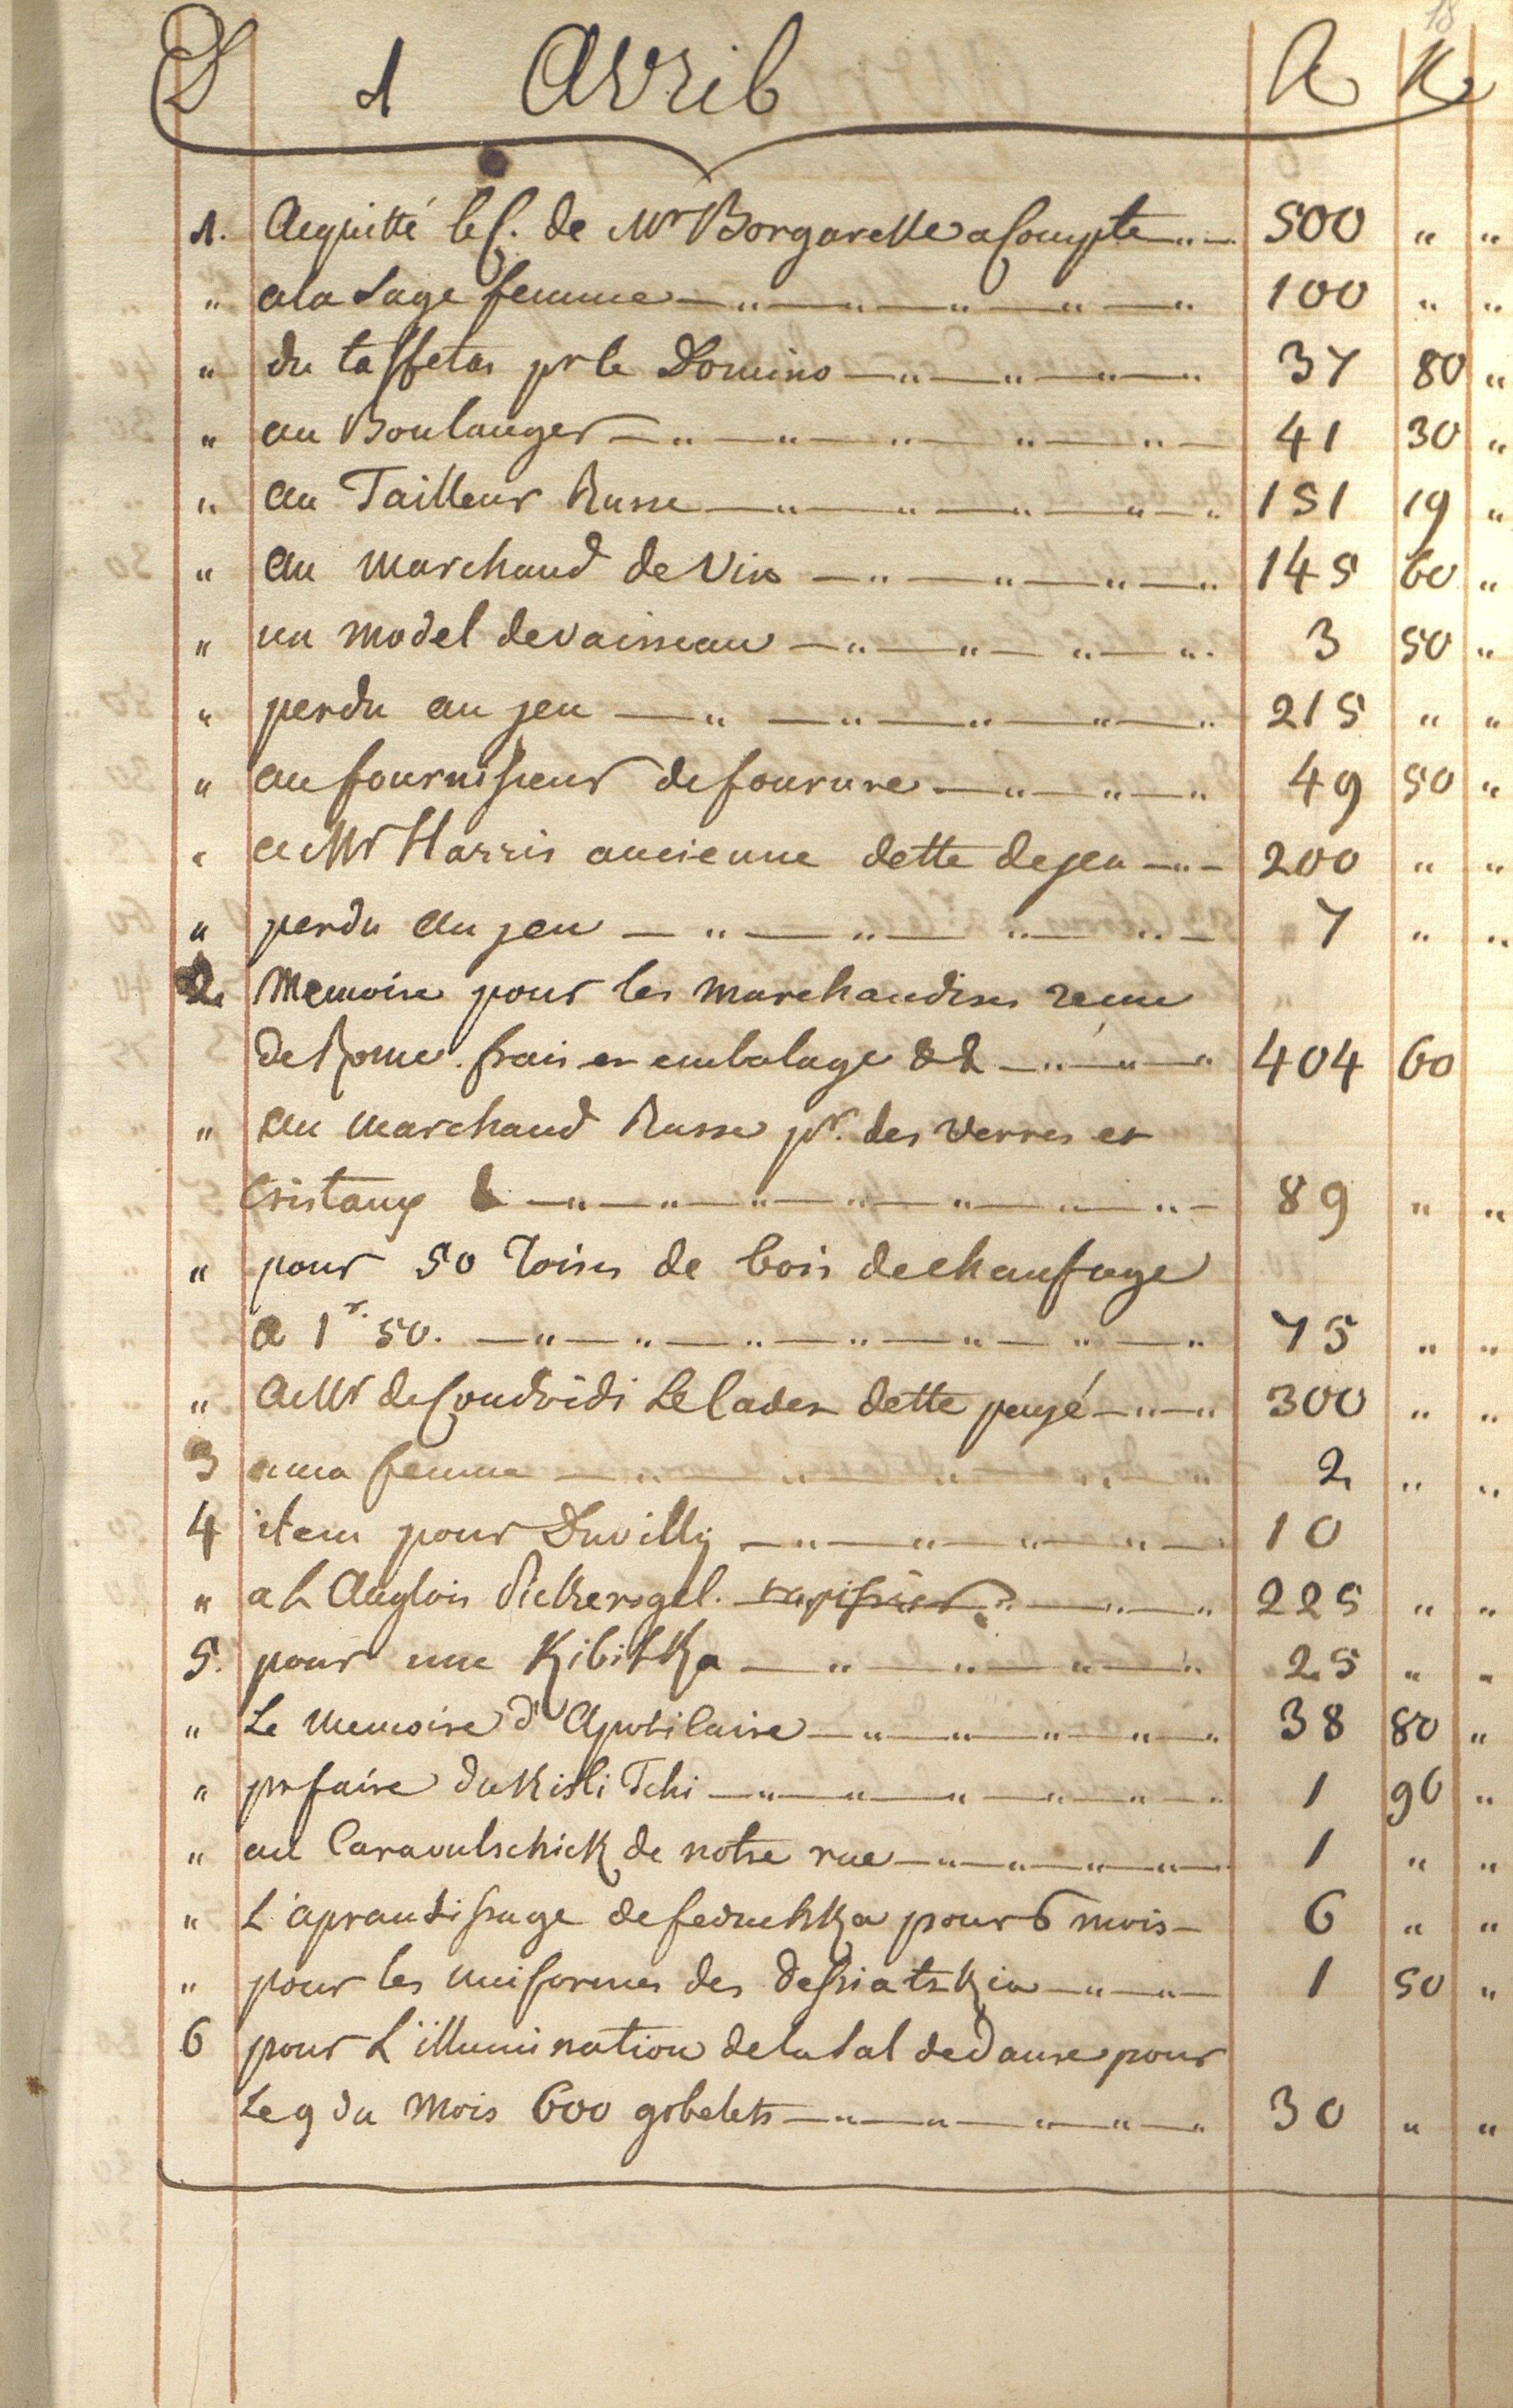 5.	Лист с записями из «Книги счетов» на апрель месяц 1789 г.